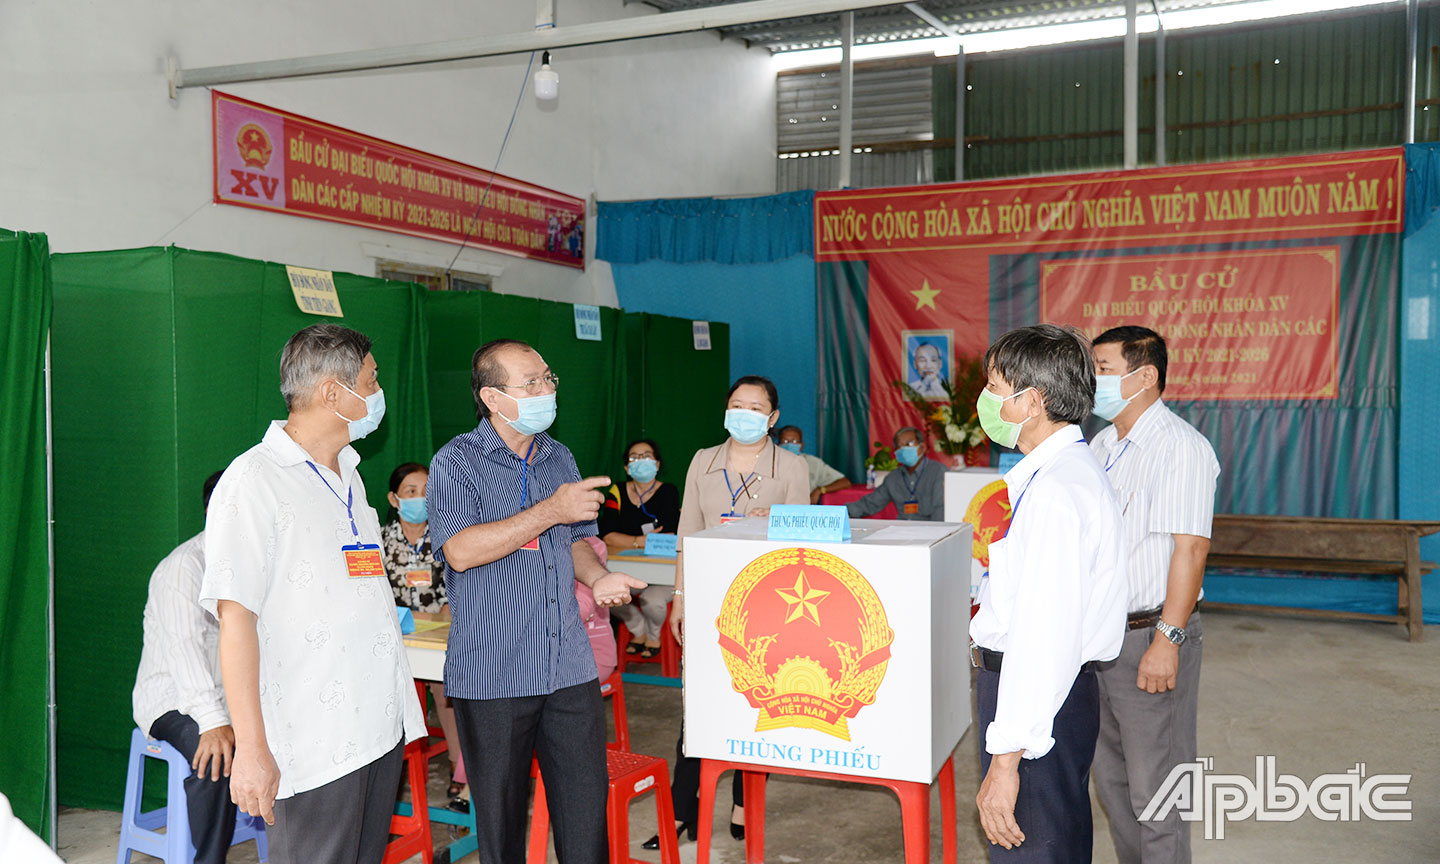 Đồng chí Trần Văn Thức (thứ 2, từ trái qua) kiểm tra các khu vực bỏ phiếu trong ngày bầu cử.